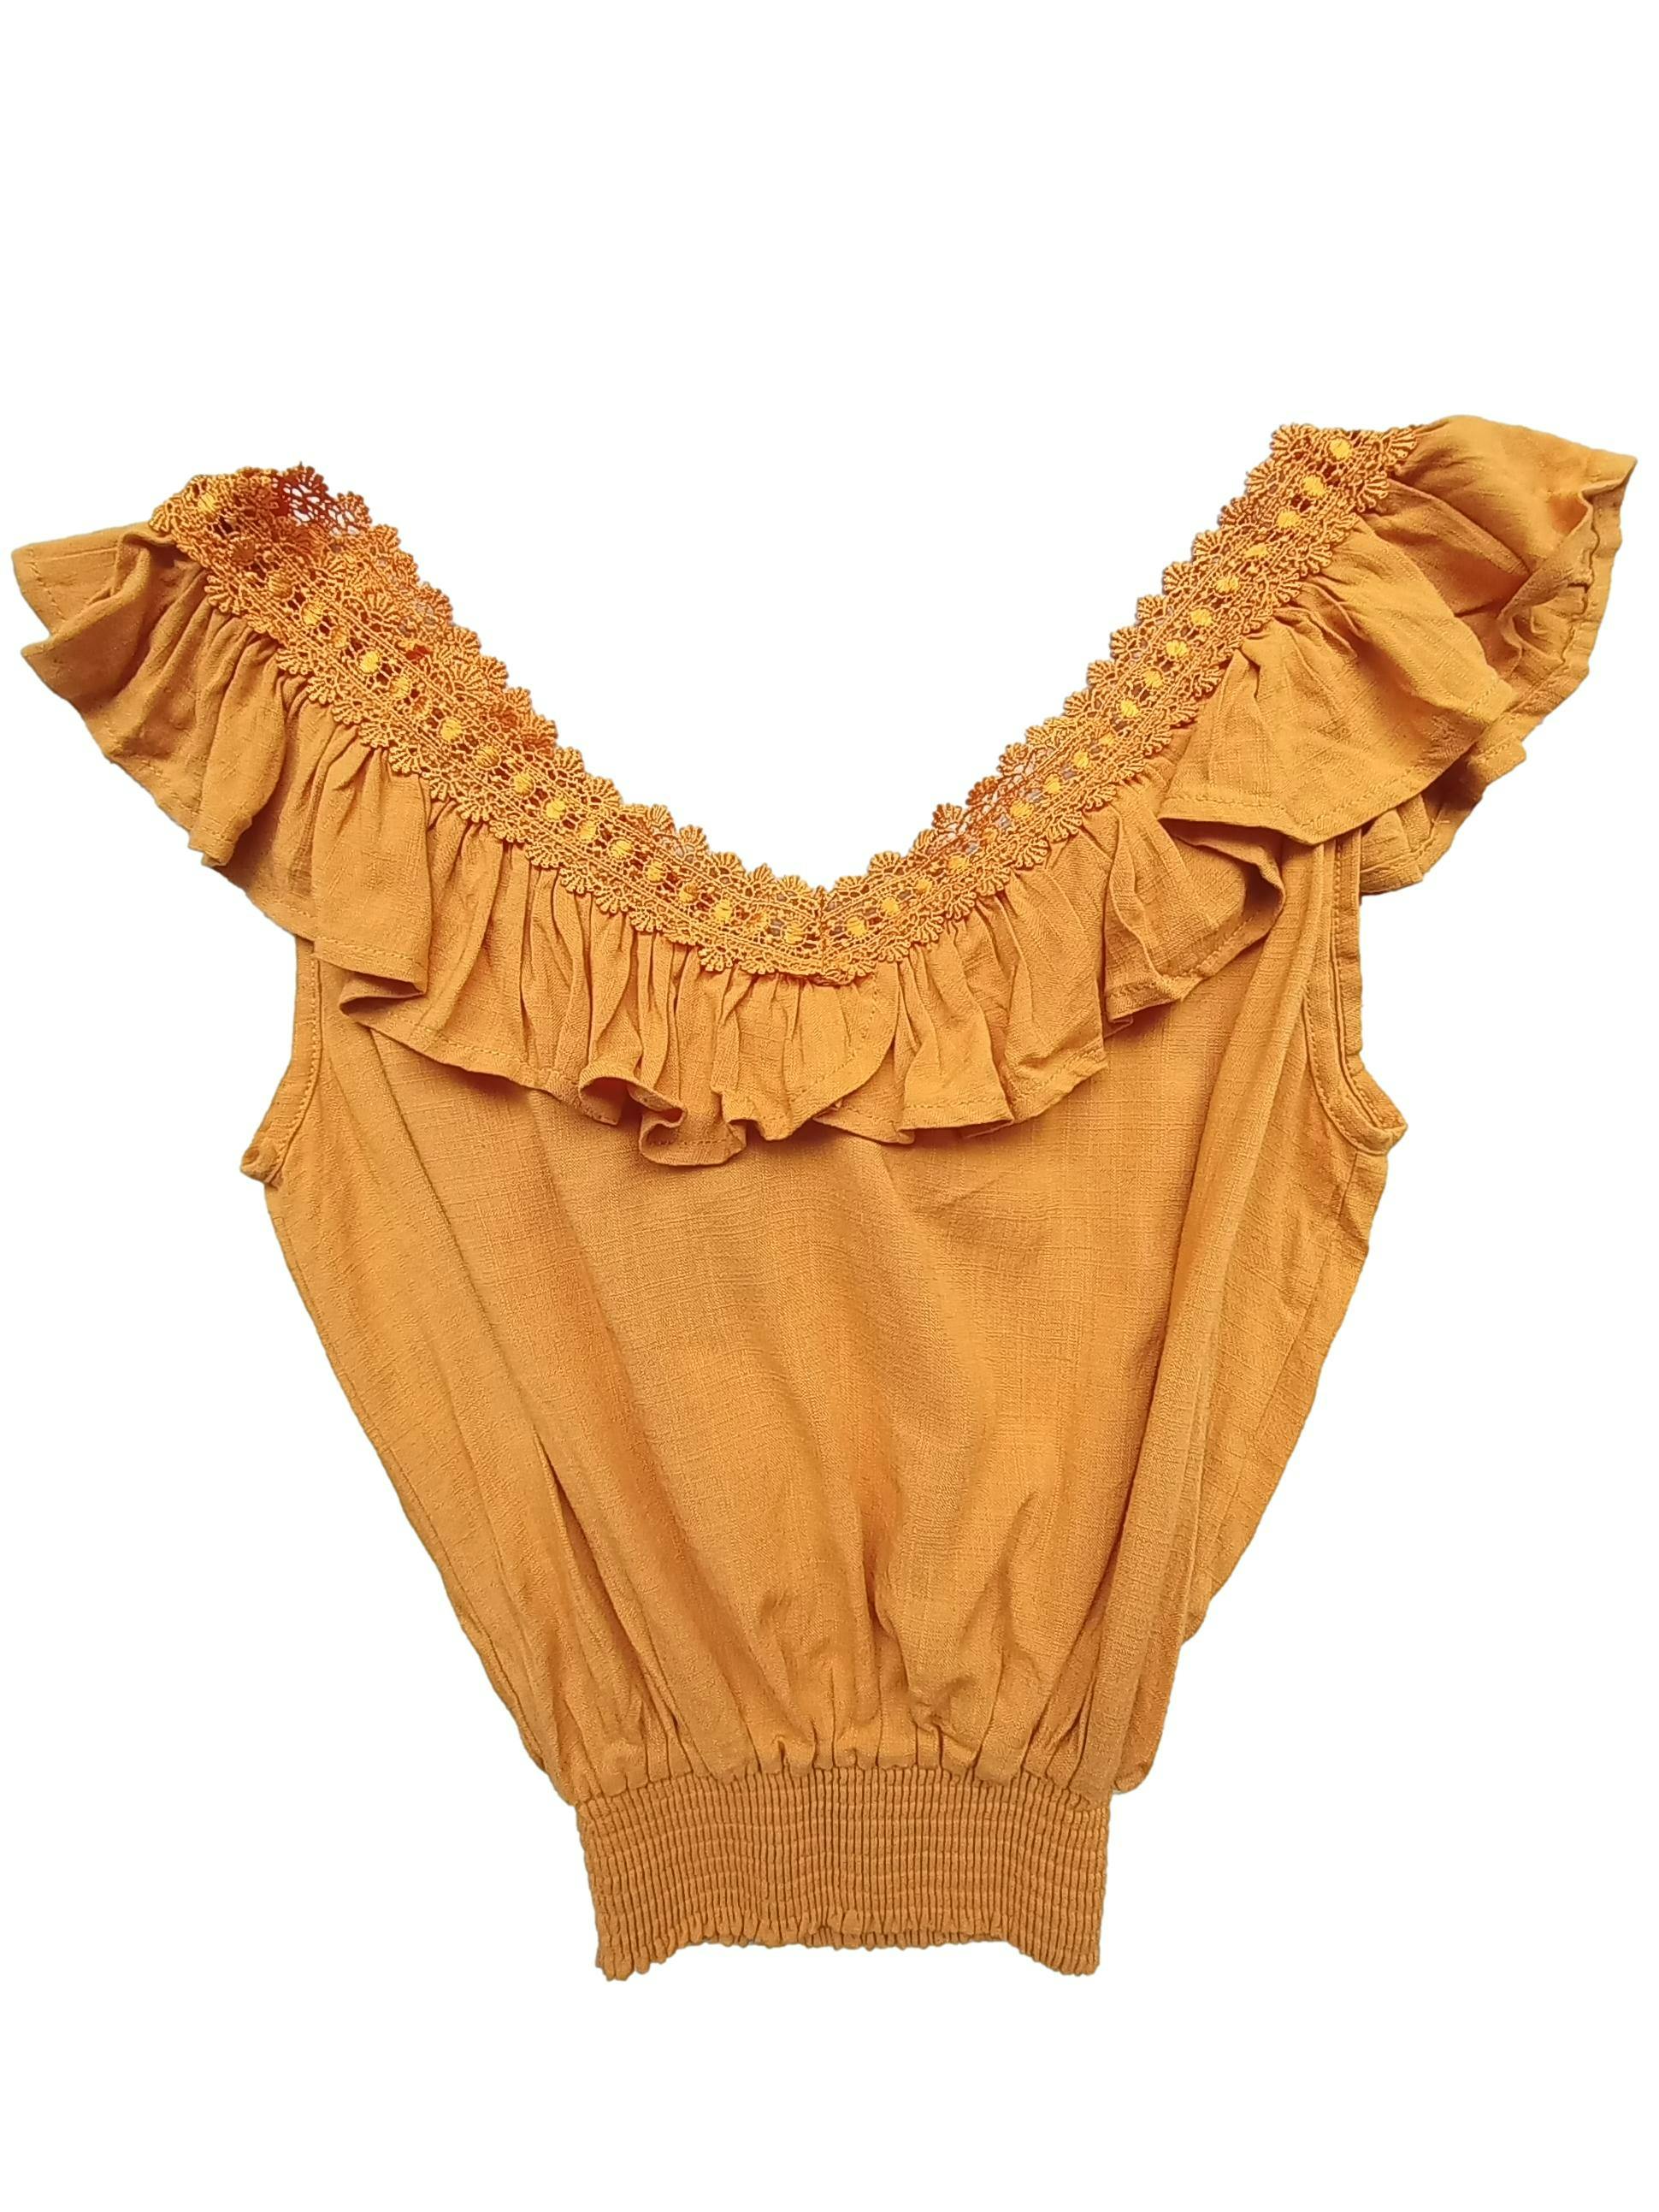 blusa mostaza tipo chalis con volante en escote, detalles de encaje. Busto 94 cm. largo 48 cm. 